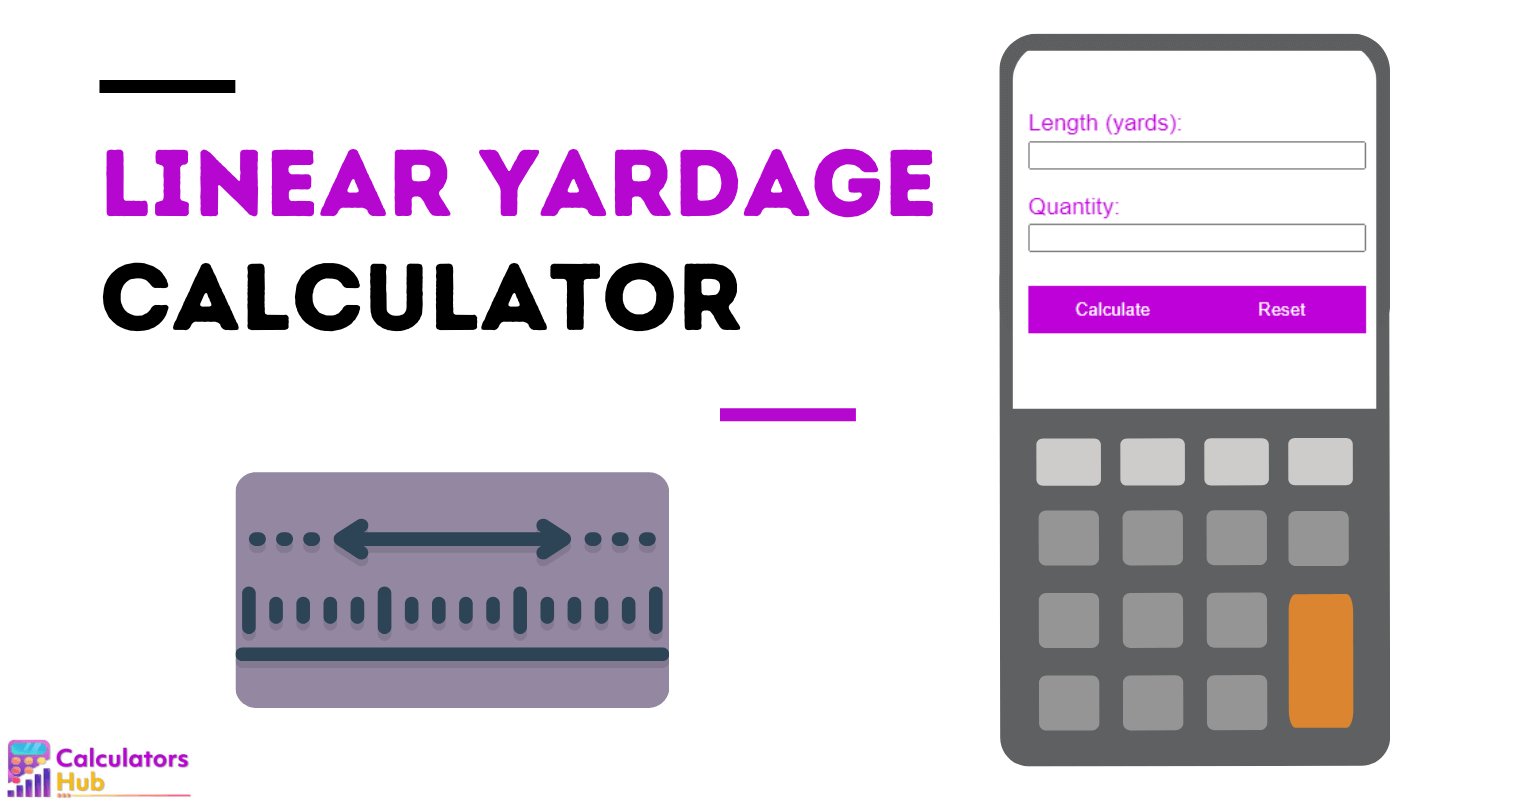 Linear Yardage Calculator